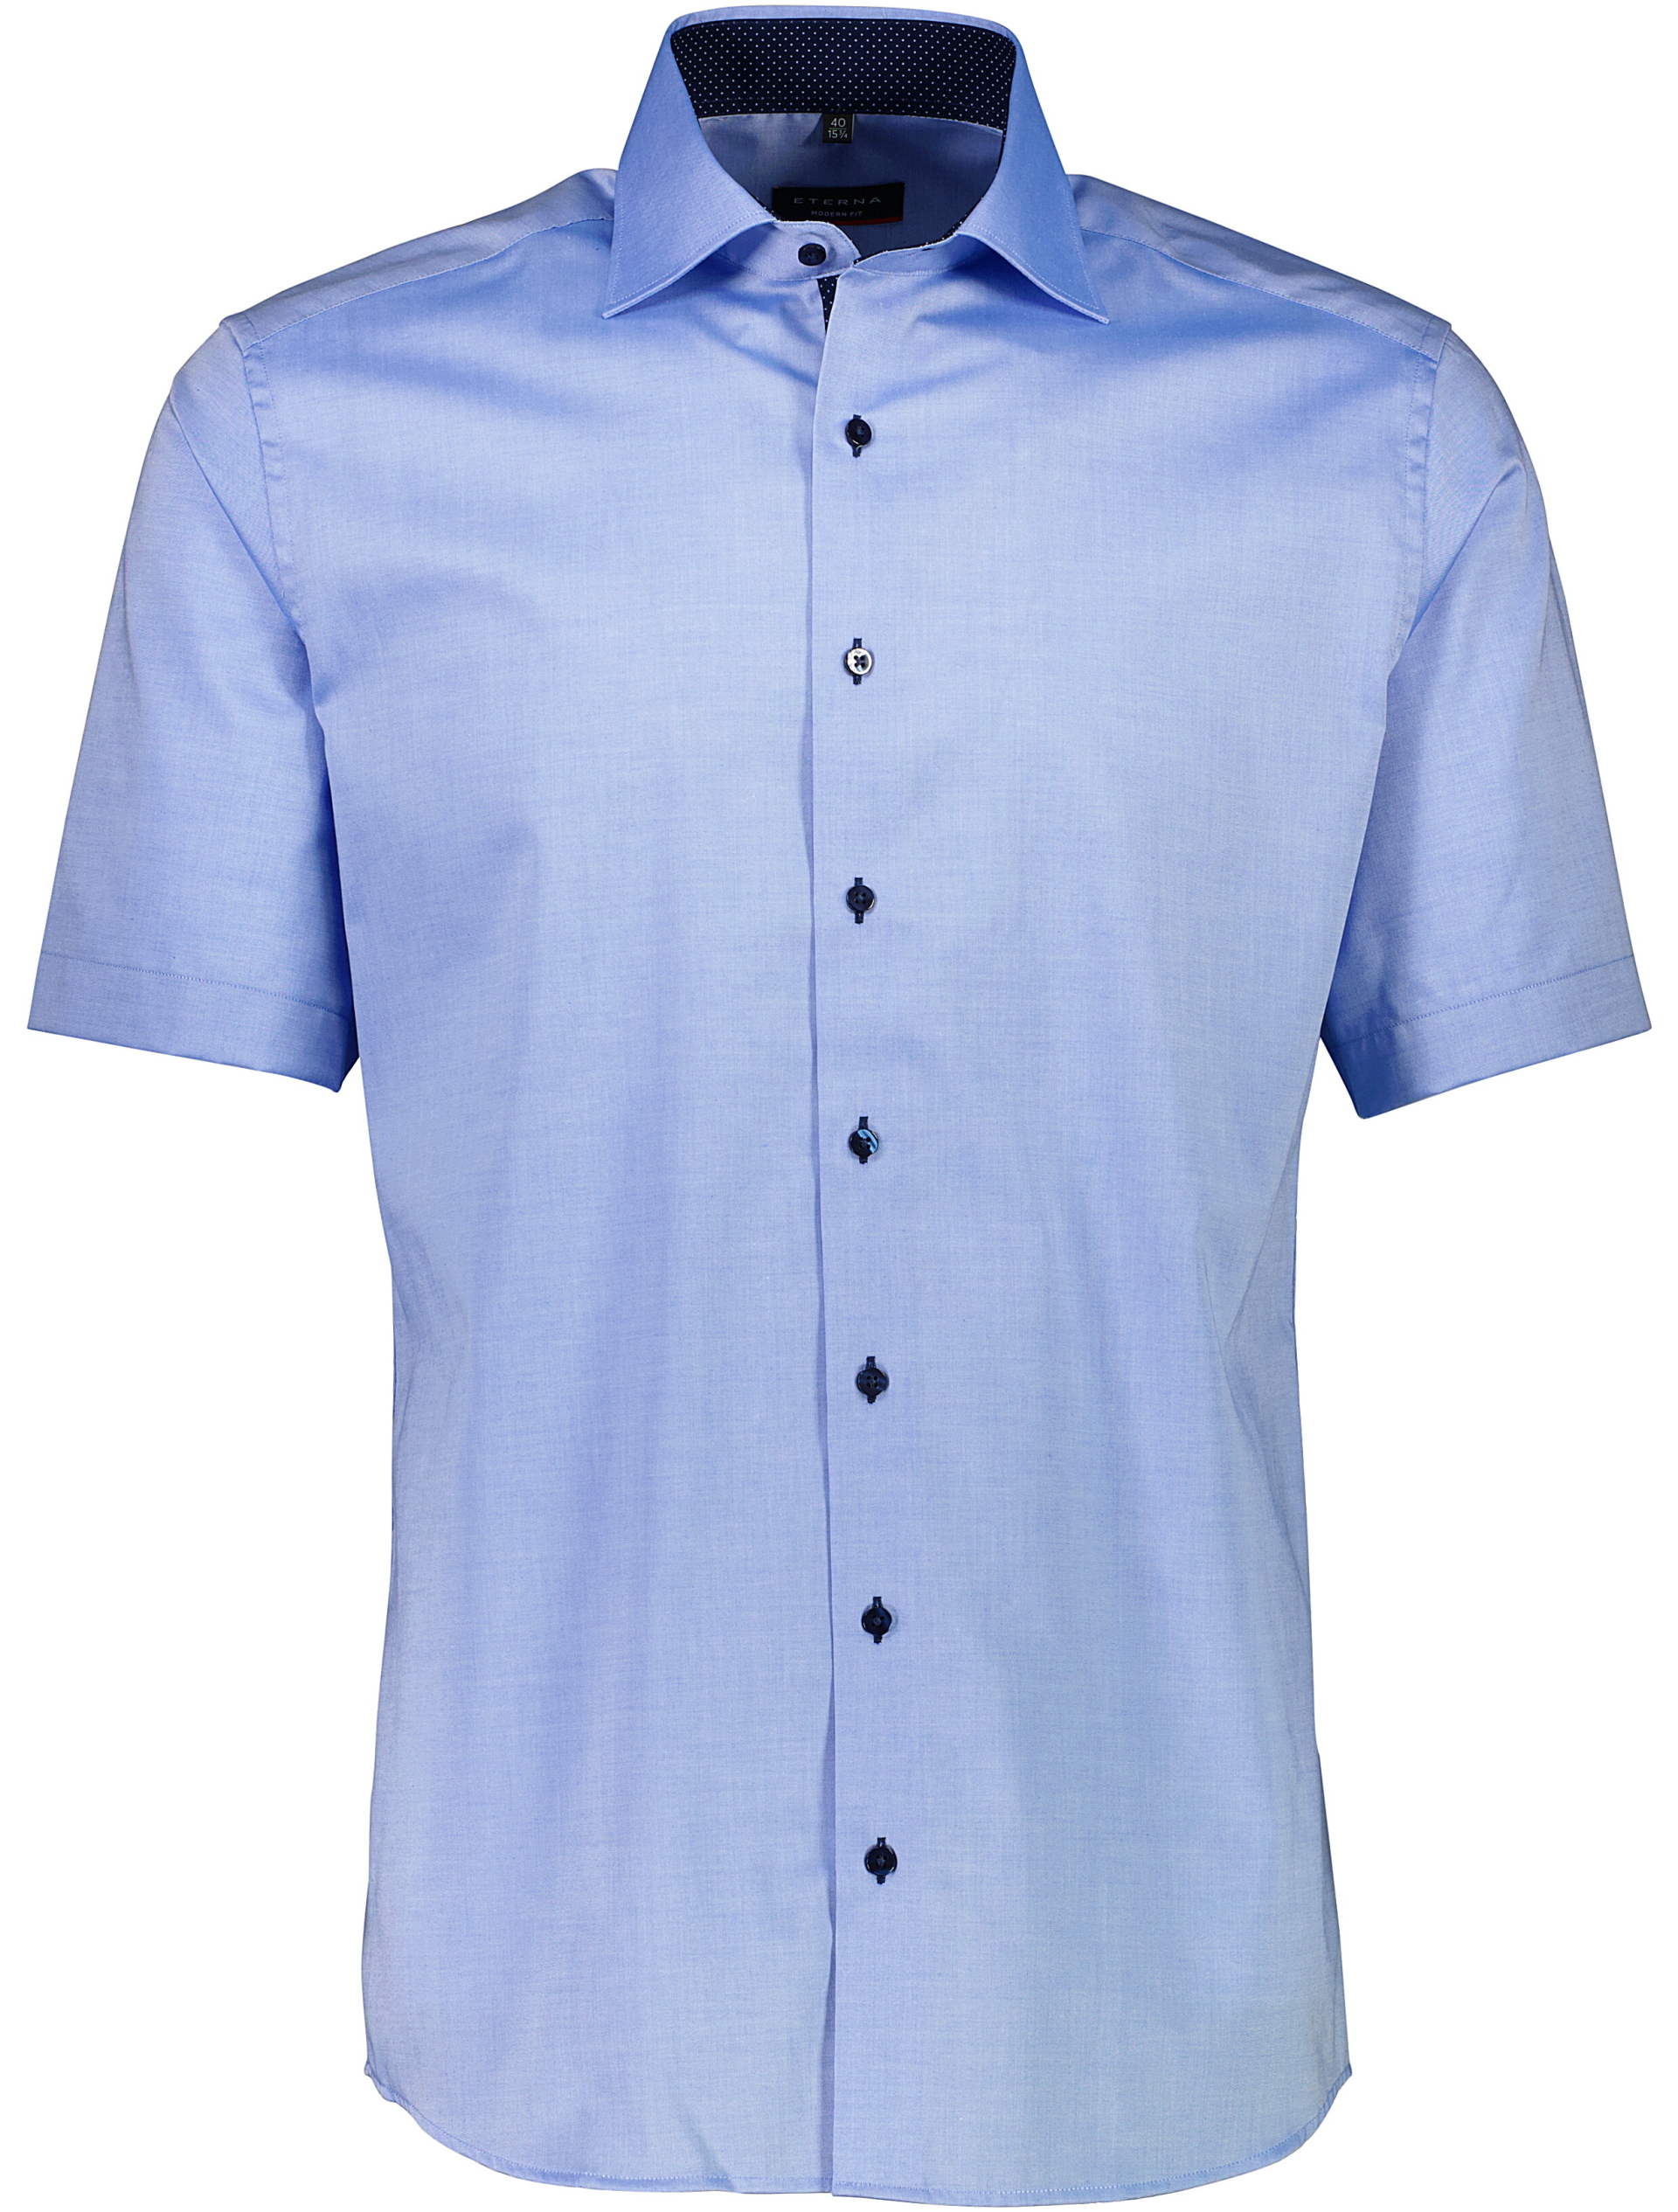 Eterna Casual skjorte blå / 12 lt blue